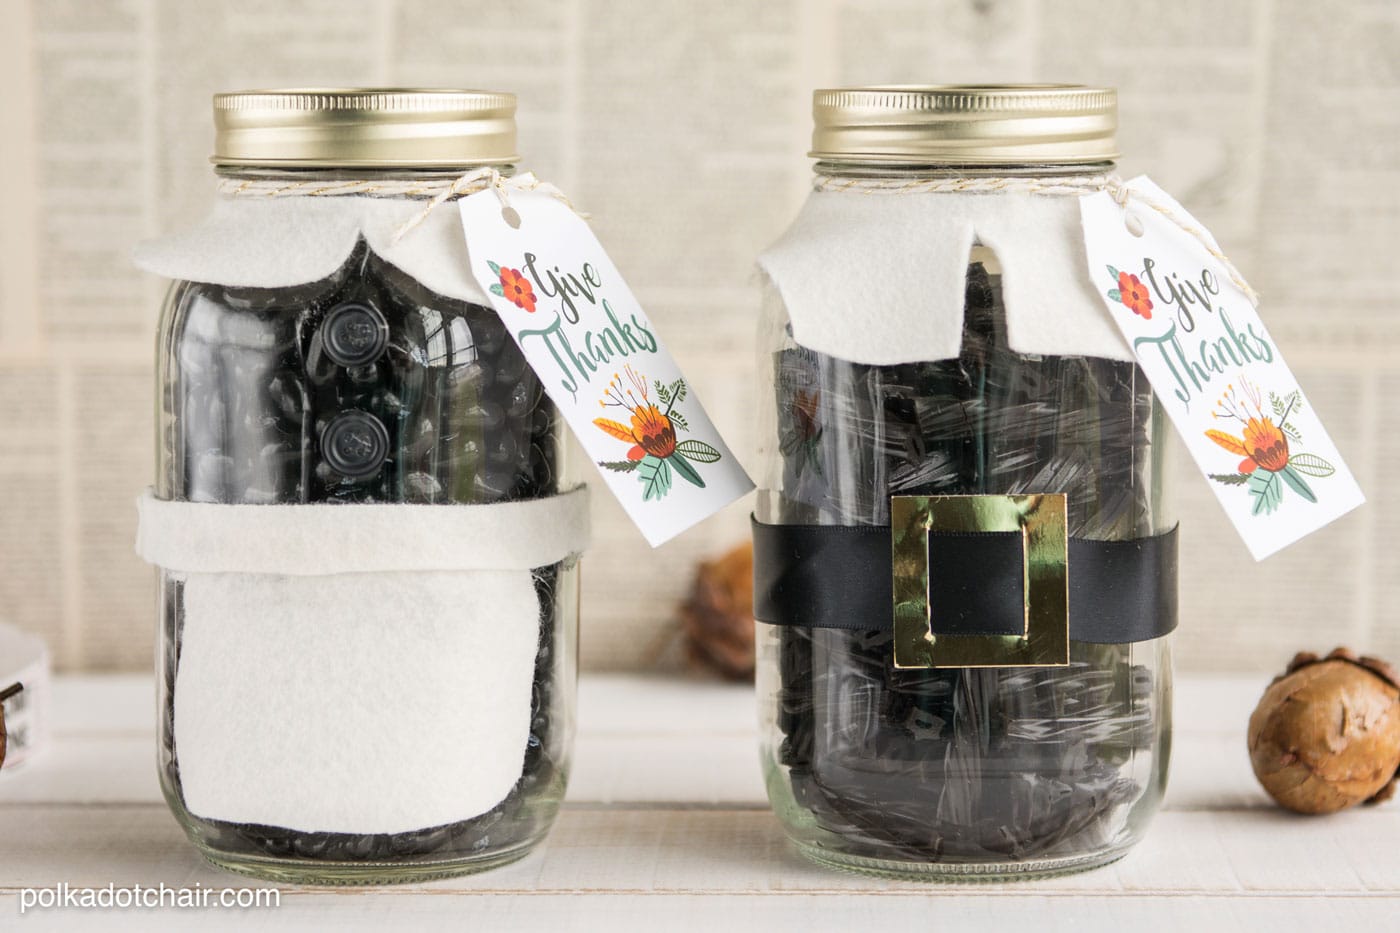 Cute Thanksgiving Pilgrim Mason Jar Gift Idea, would be cute for a hostess or teacher gift.